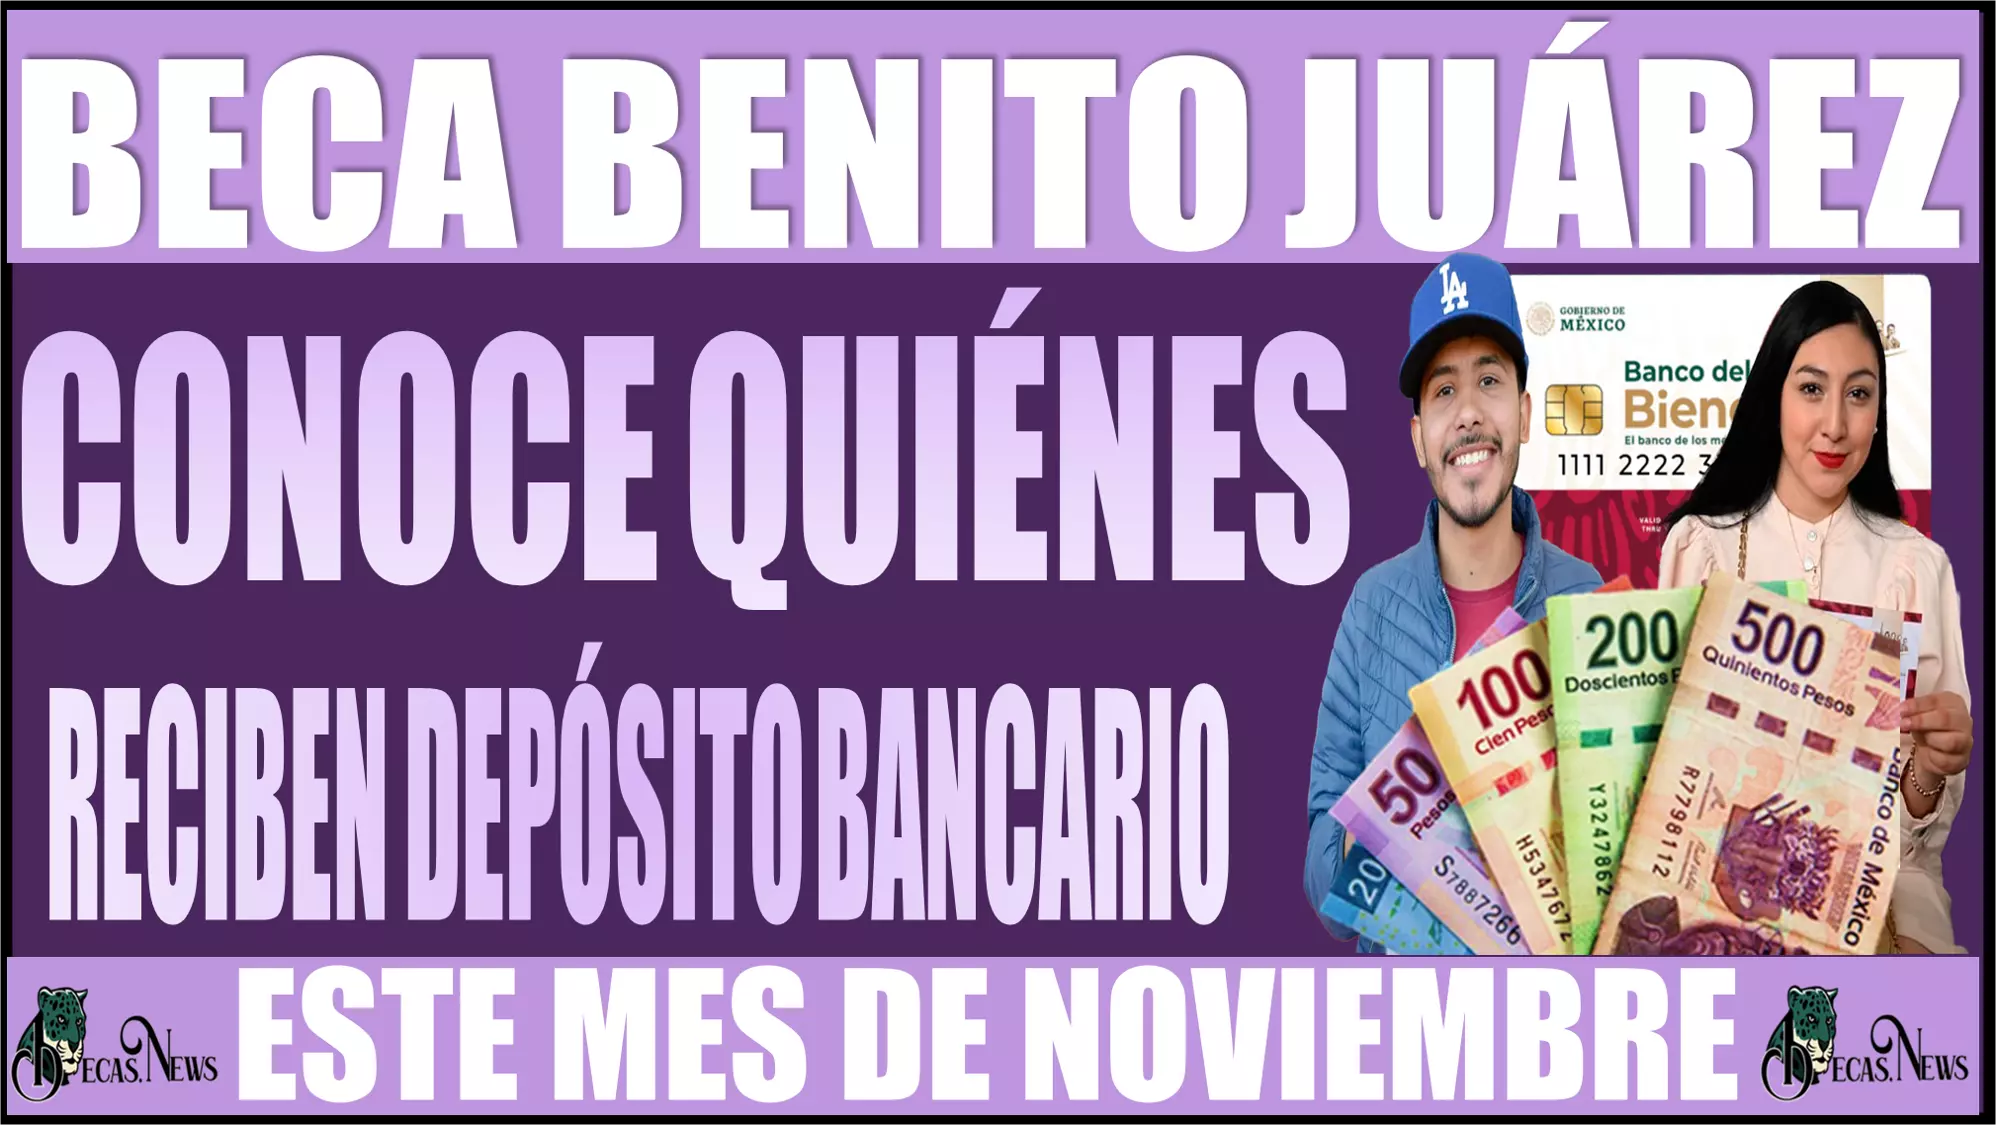 Beca Benito Juárez de este año 2023: Conoce quiénes reciben su depósito bancario este mes de noviembre 